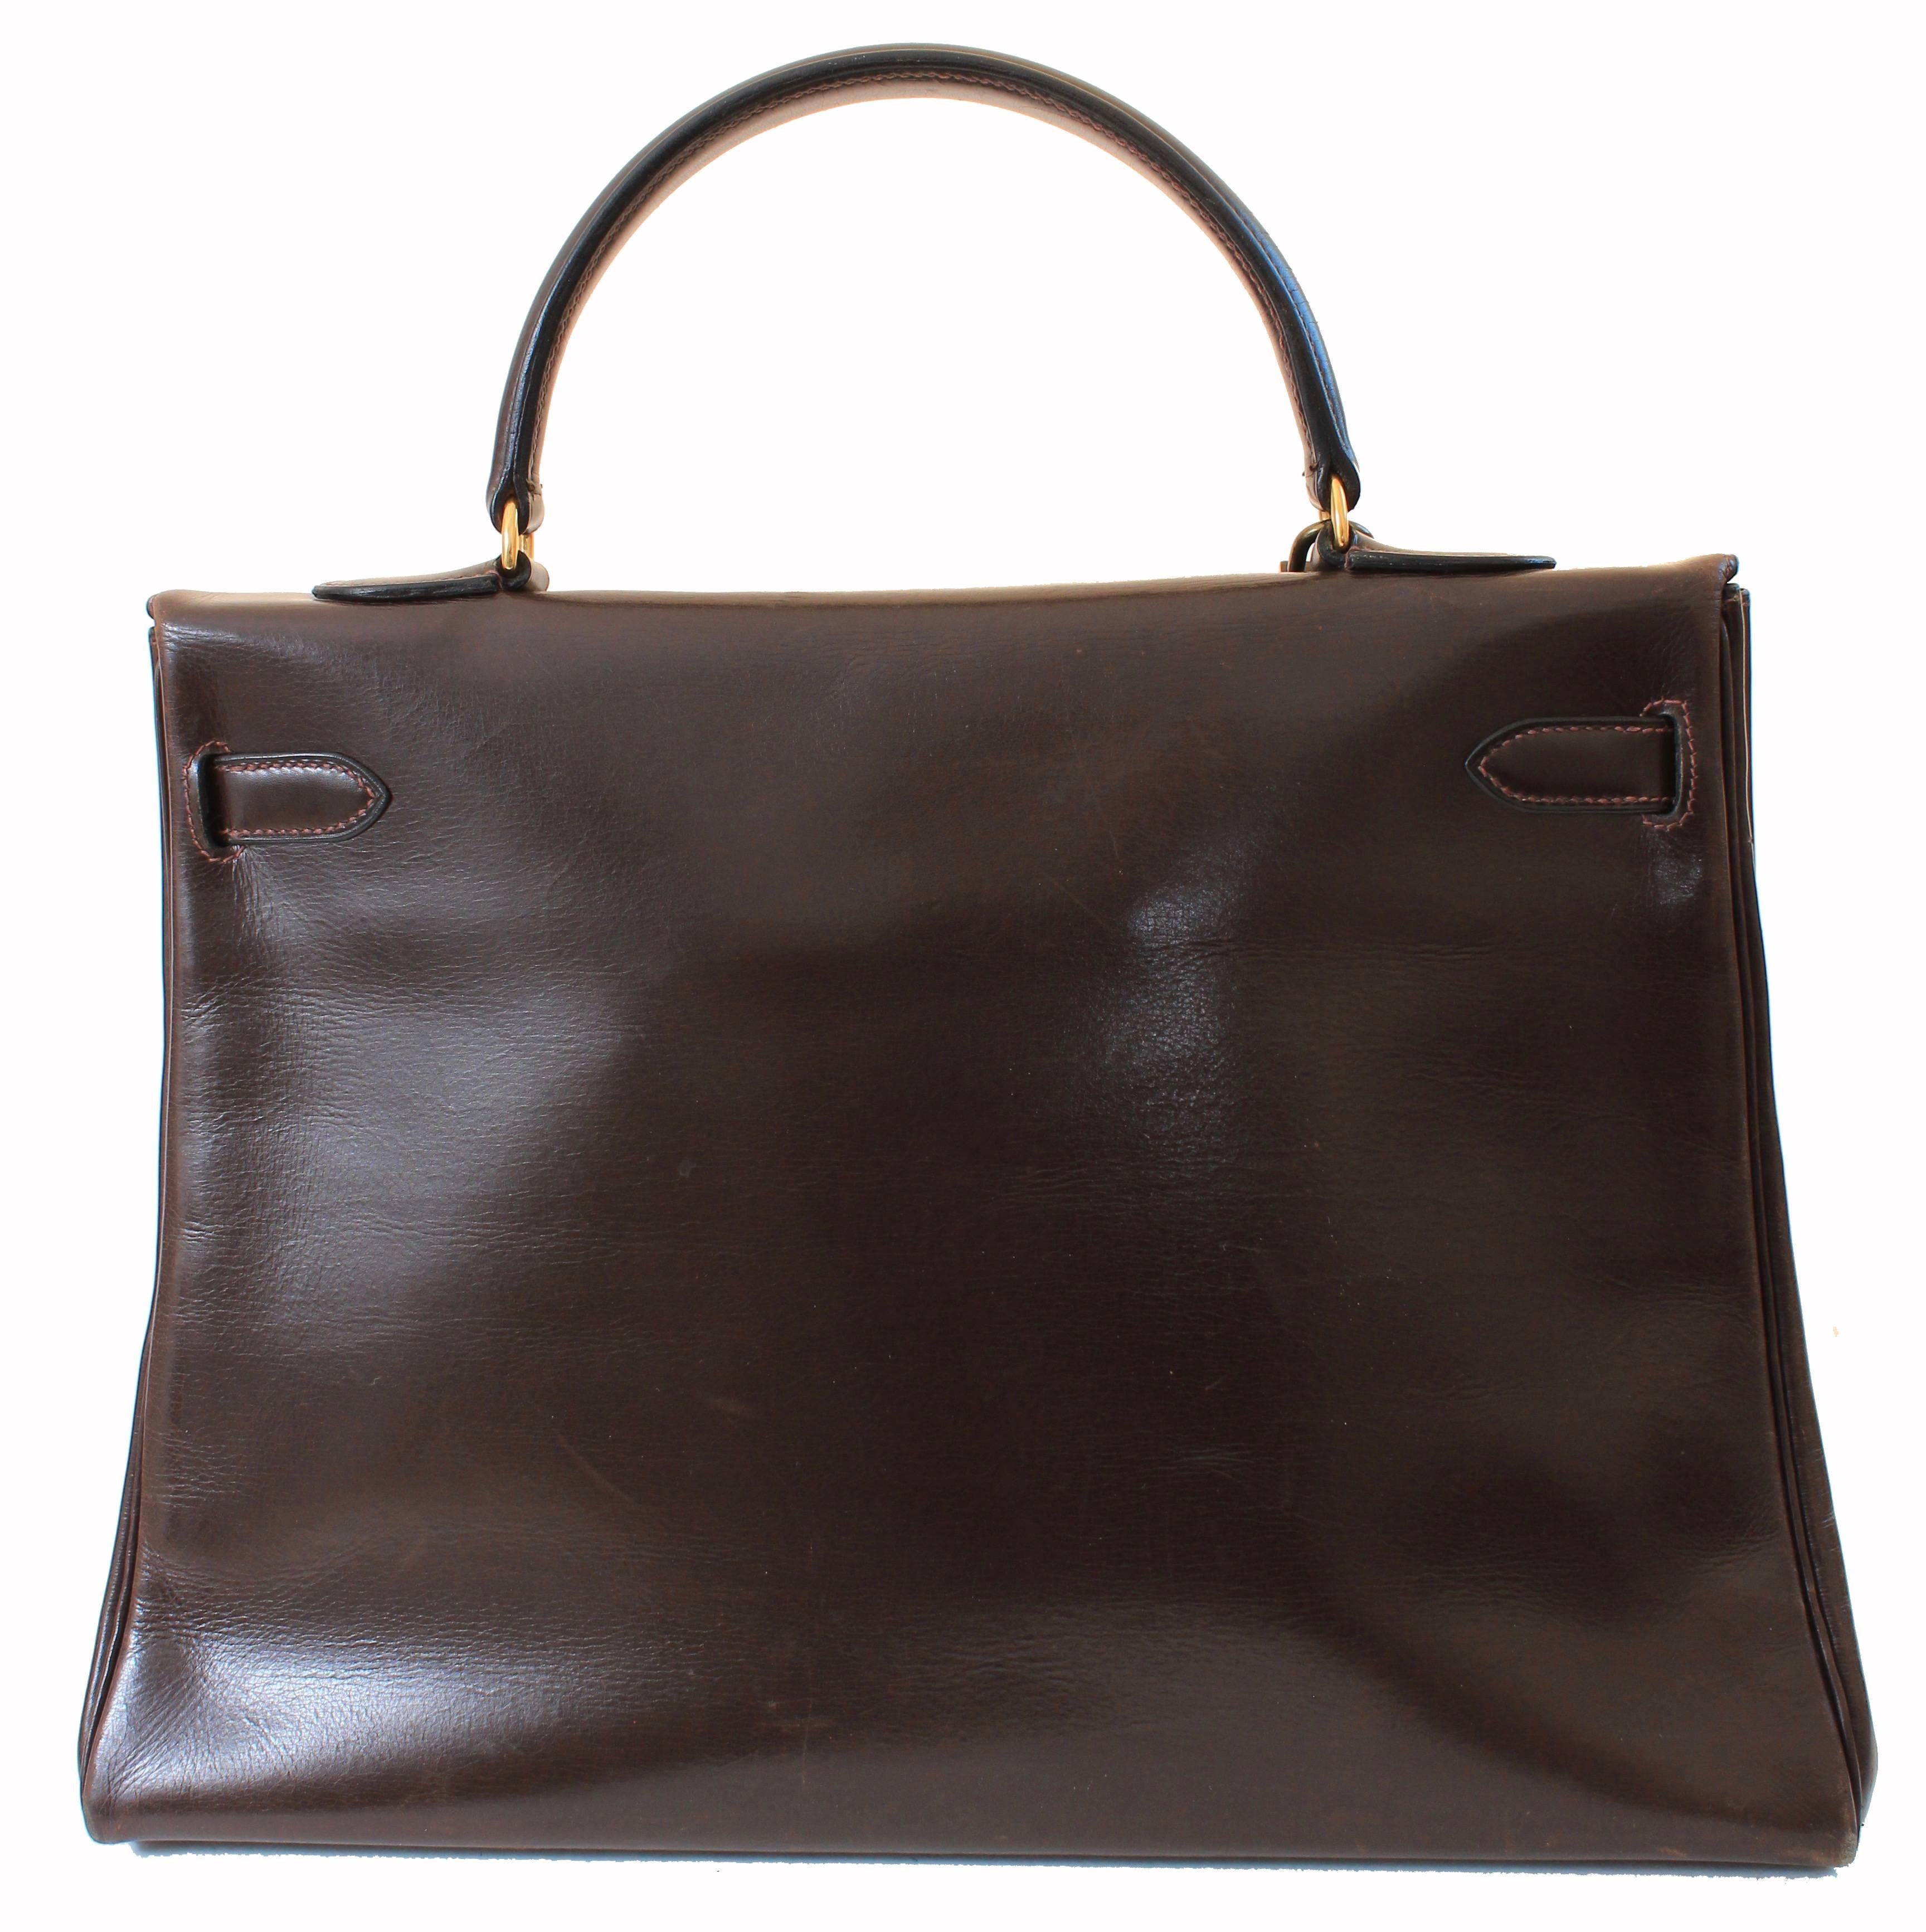 Hermes Kelly Bag 35cm Retourne Brown Box Leather Top Handle Bag 1945 Vintage  3